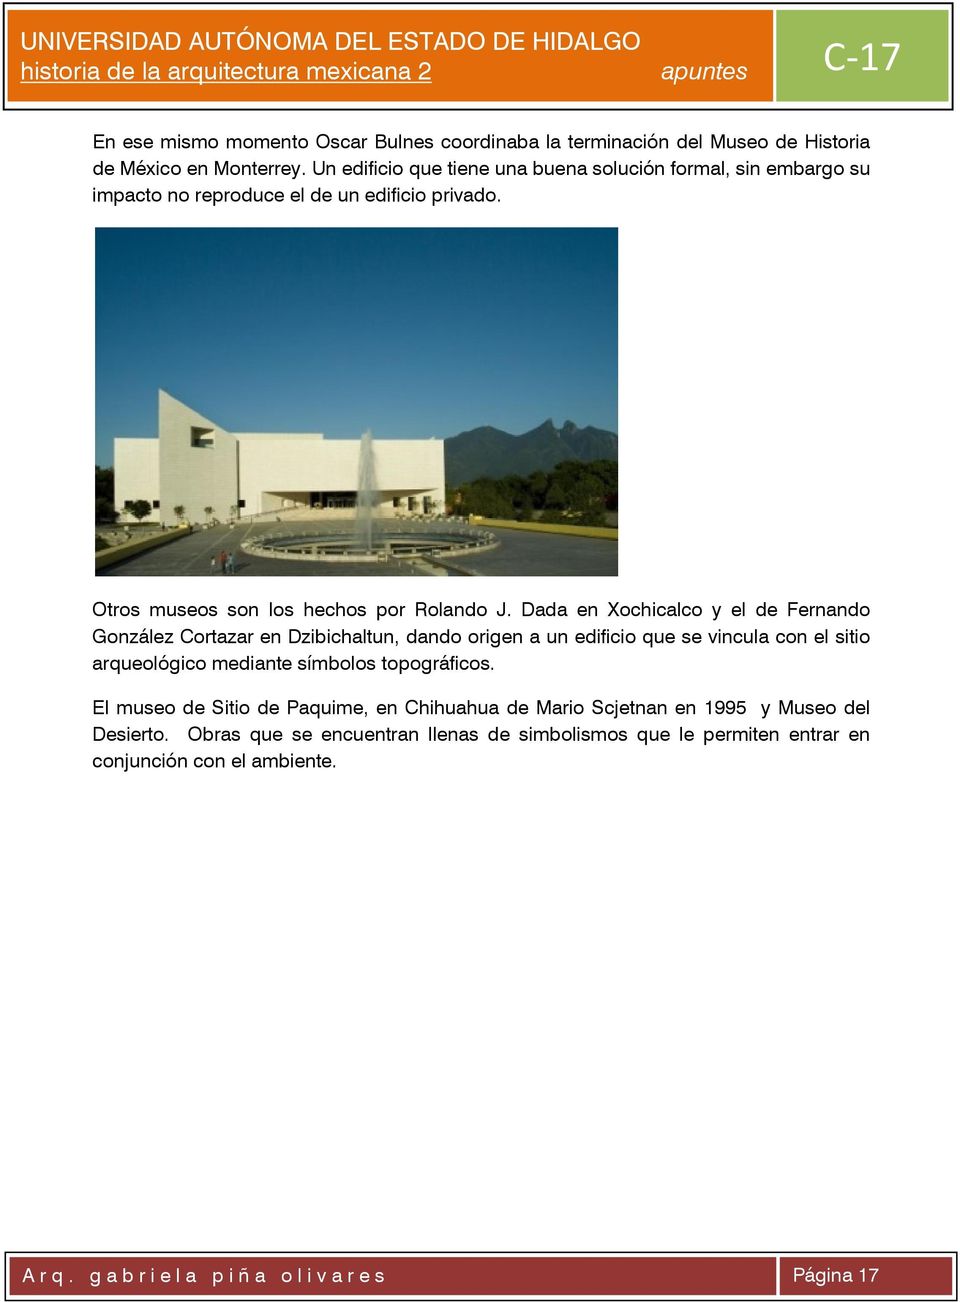 Dada en Xochicalco y el de Fernando González Cortazar en Dzibichaltun, dando origen a un edificio que se vincula con el sitio arqueológico mediante símbolos